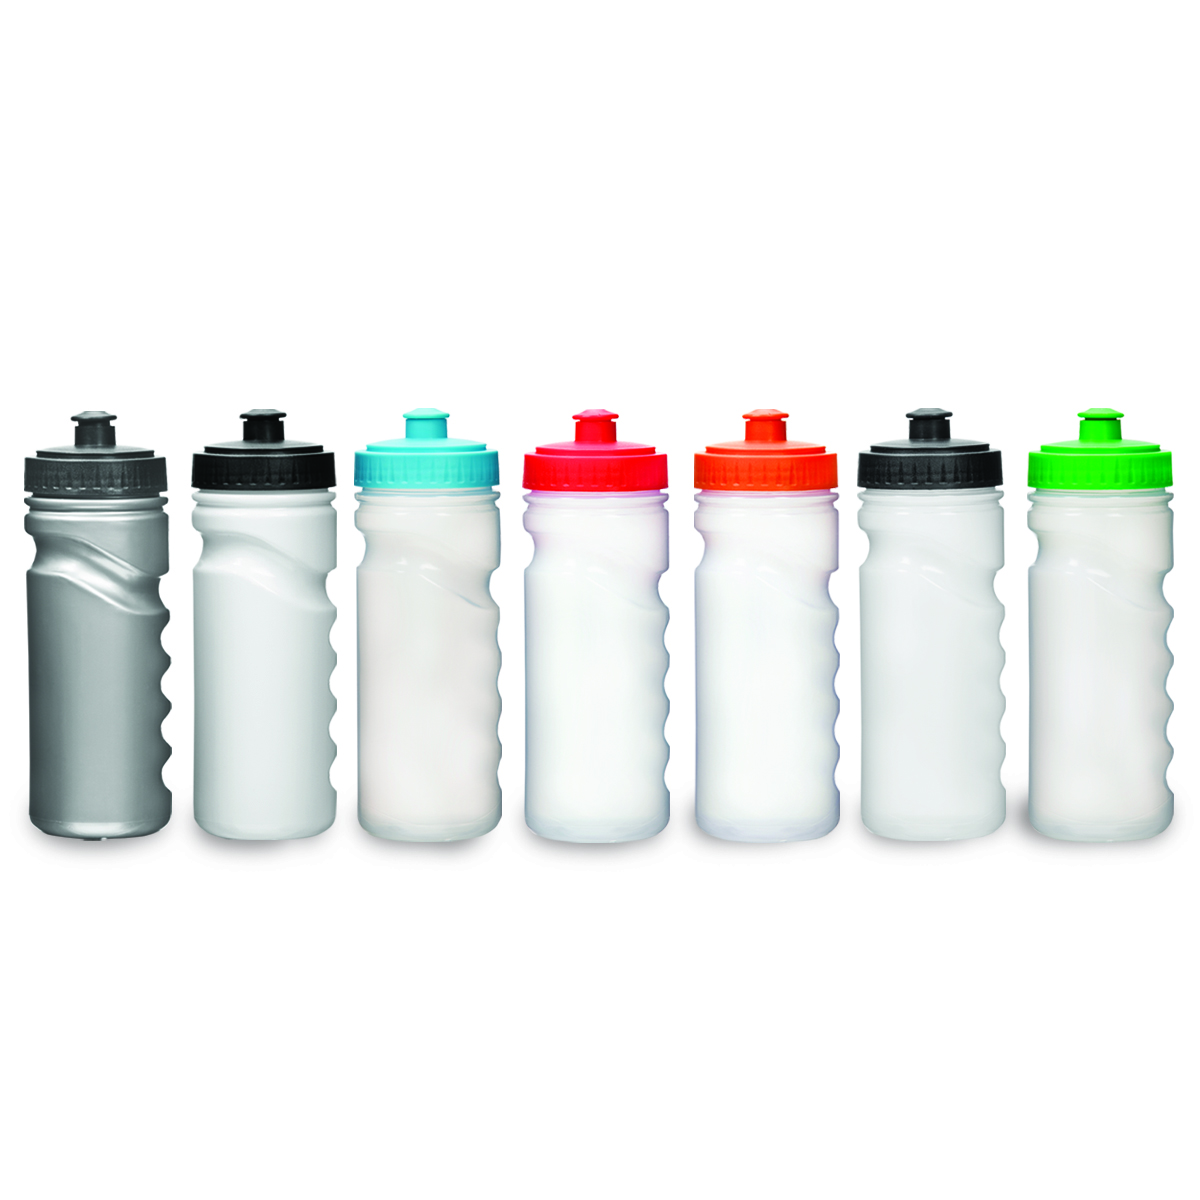 אולטרה - בקבוק שתיה נפח 700 מ”ל. 
פיית ספורט.
חומר PE רך.
ללא BPA.
ללא פאטלאטים.